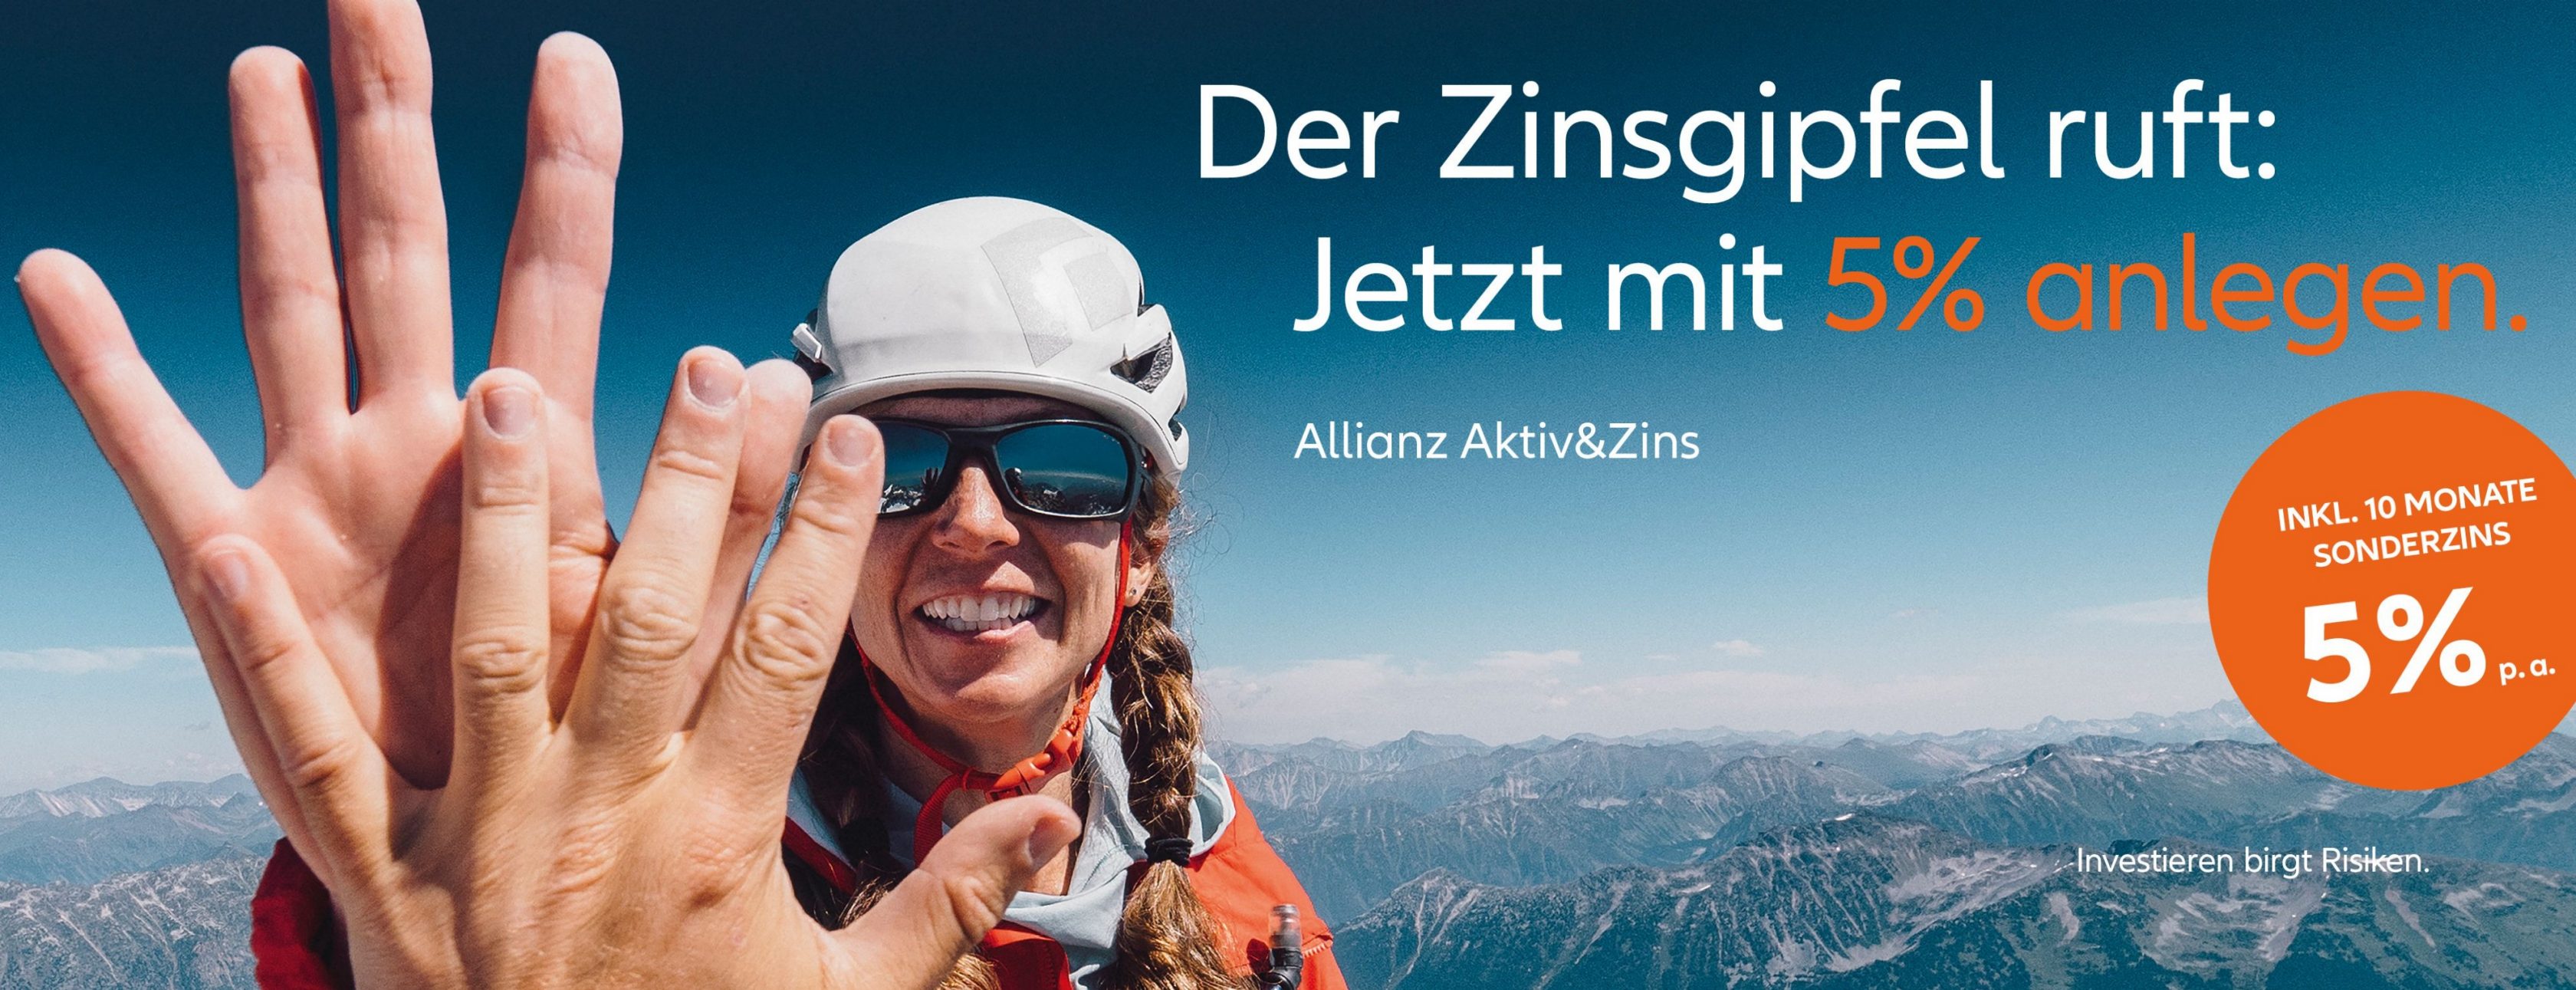 Allianz Versicherung Enrico Schultz Kaltennordheim - #Allianz #Kaltennordheim #Schmalkalden #Rosa #Rhön